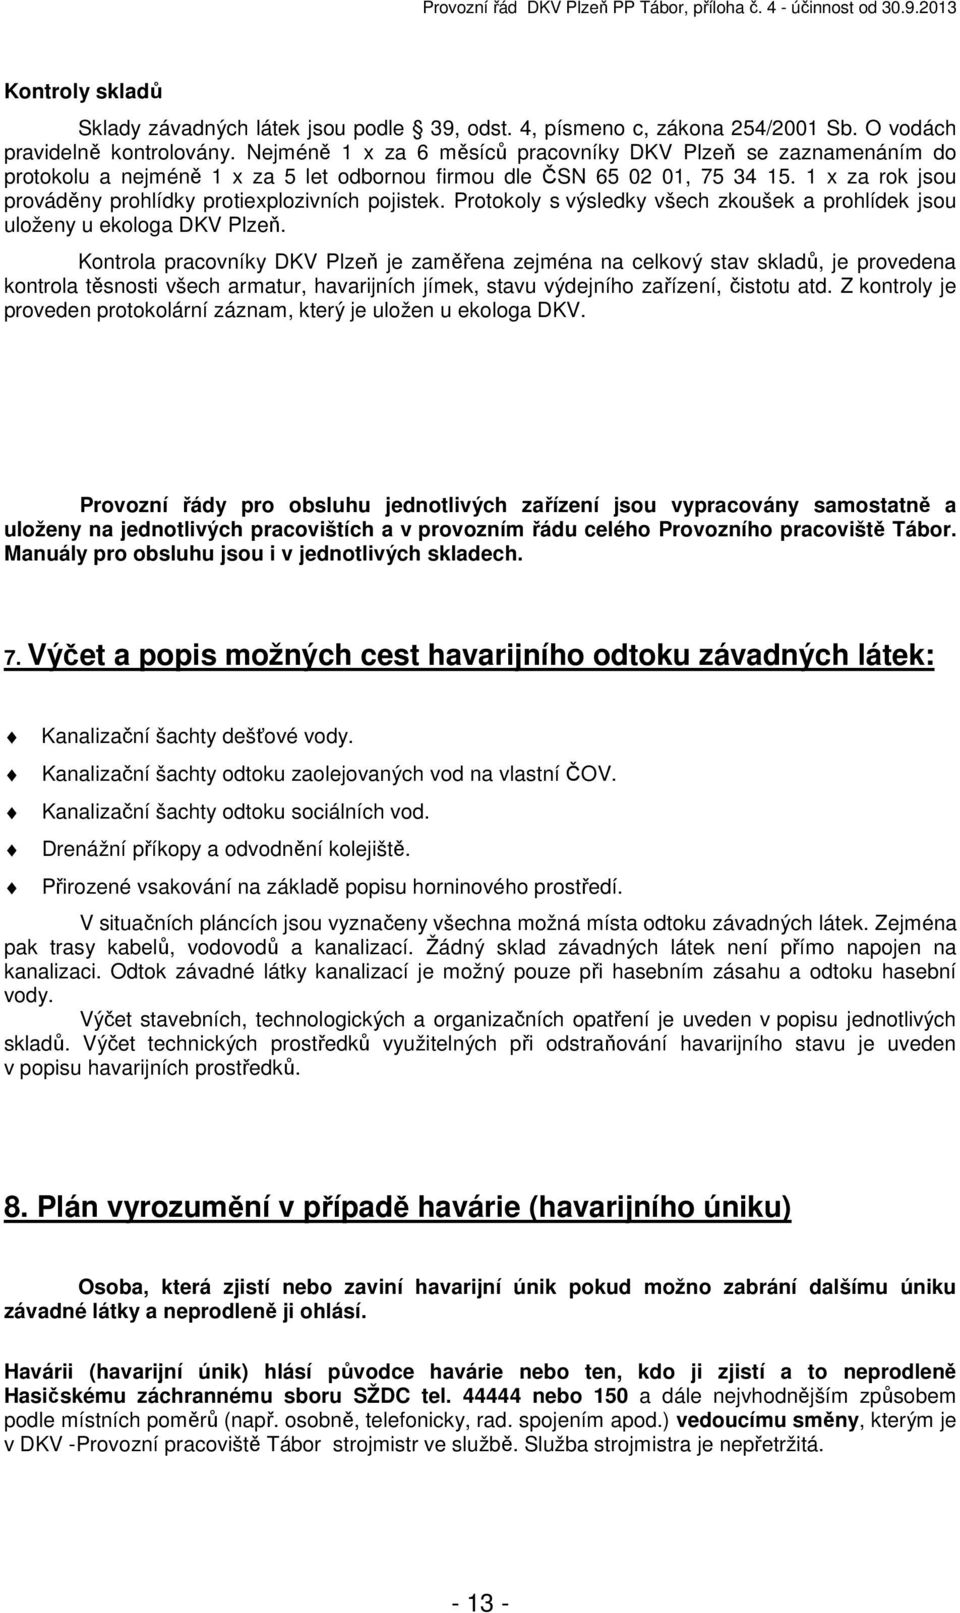 1 x za rok jsou prováděny prohlídky protiexplozivních pojistek. Protokoly s výsledky všech zkoušek a prohlídek jsou uloženy u ekologa DKV Plzeň.